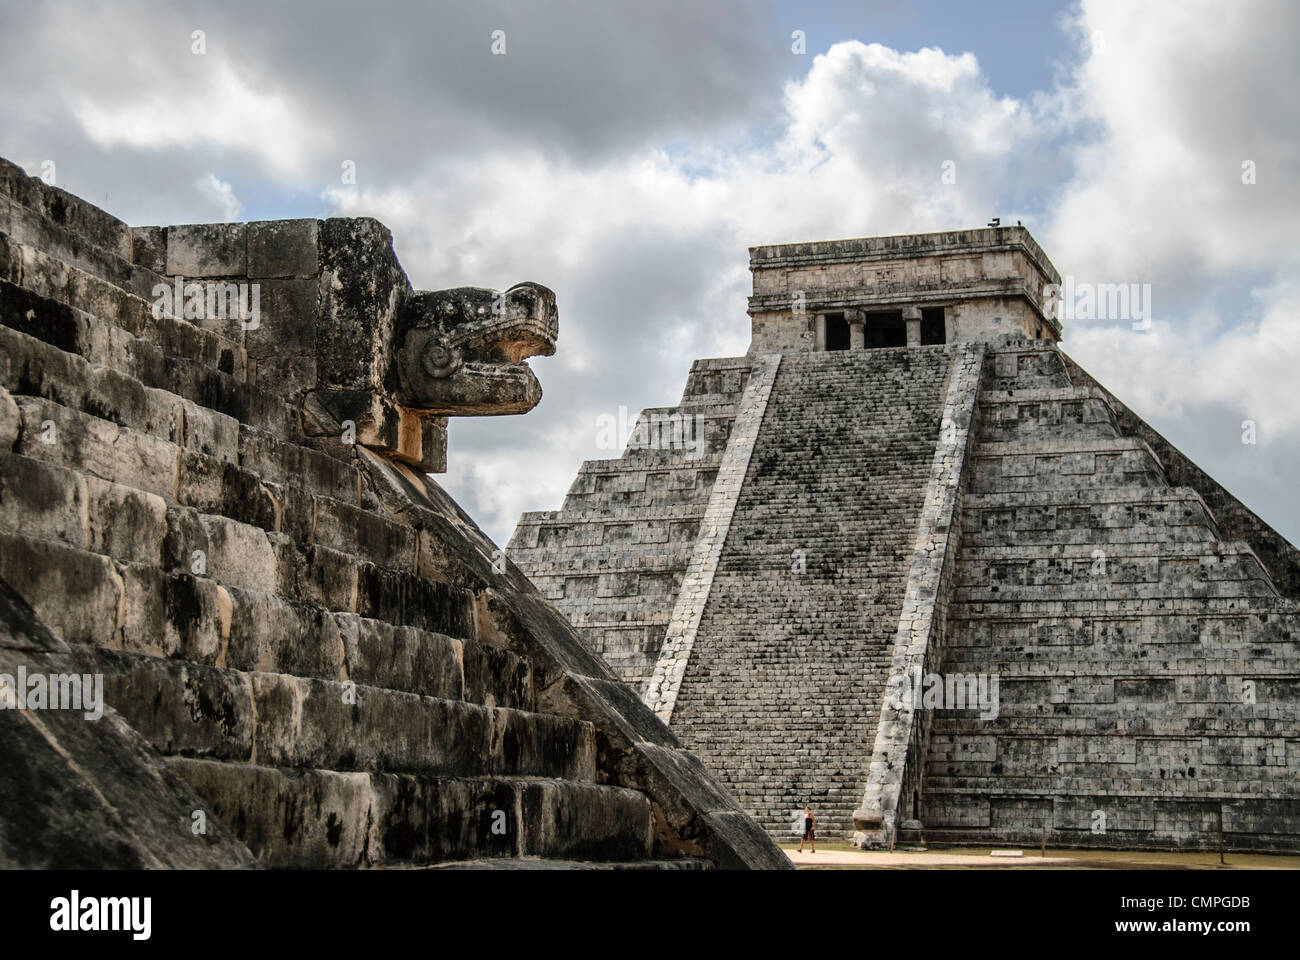 CHICHEN ITZA, Mexique - Temple de Kukulkan (El Castillo) à la Zone archéologique de Chichen Itza, les ruines d'une importante ville de la civilisation Maya au coeur de la péninsule du Yucatan au Mexique. A gauche, l'édifice est connu sous le nom de plate-forme de Vénus. Banque D'Images